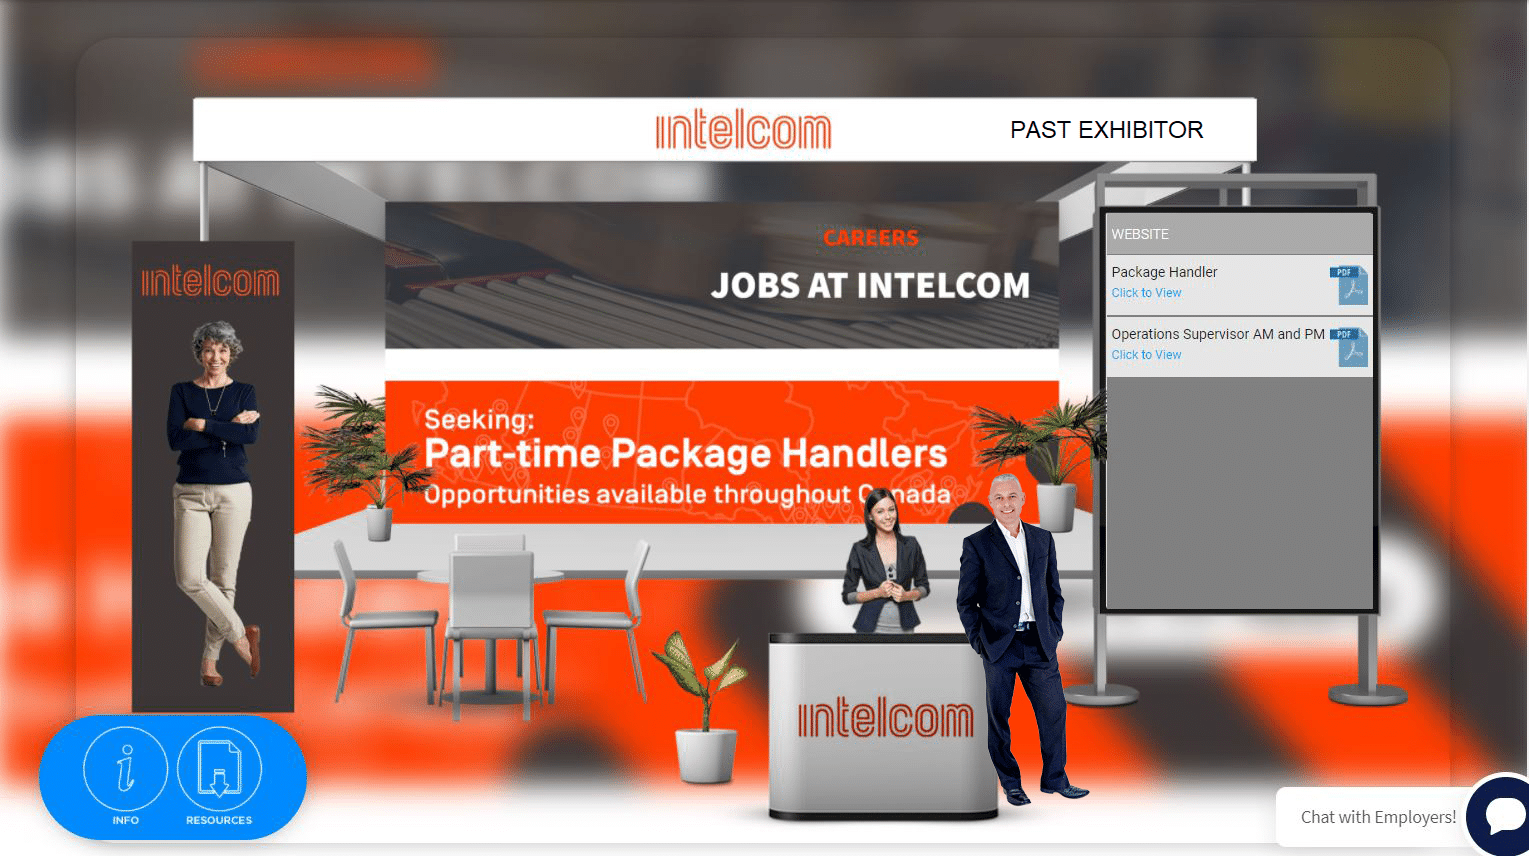 intelcom job fair banner